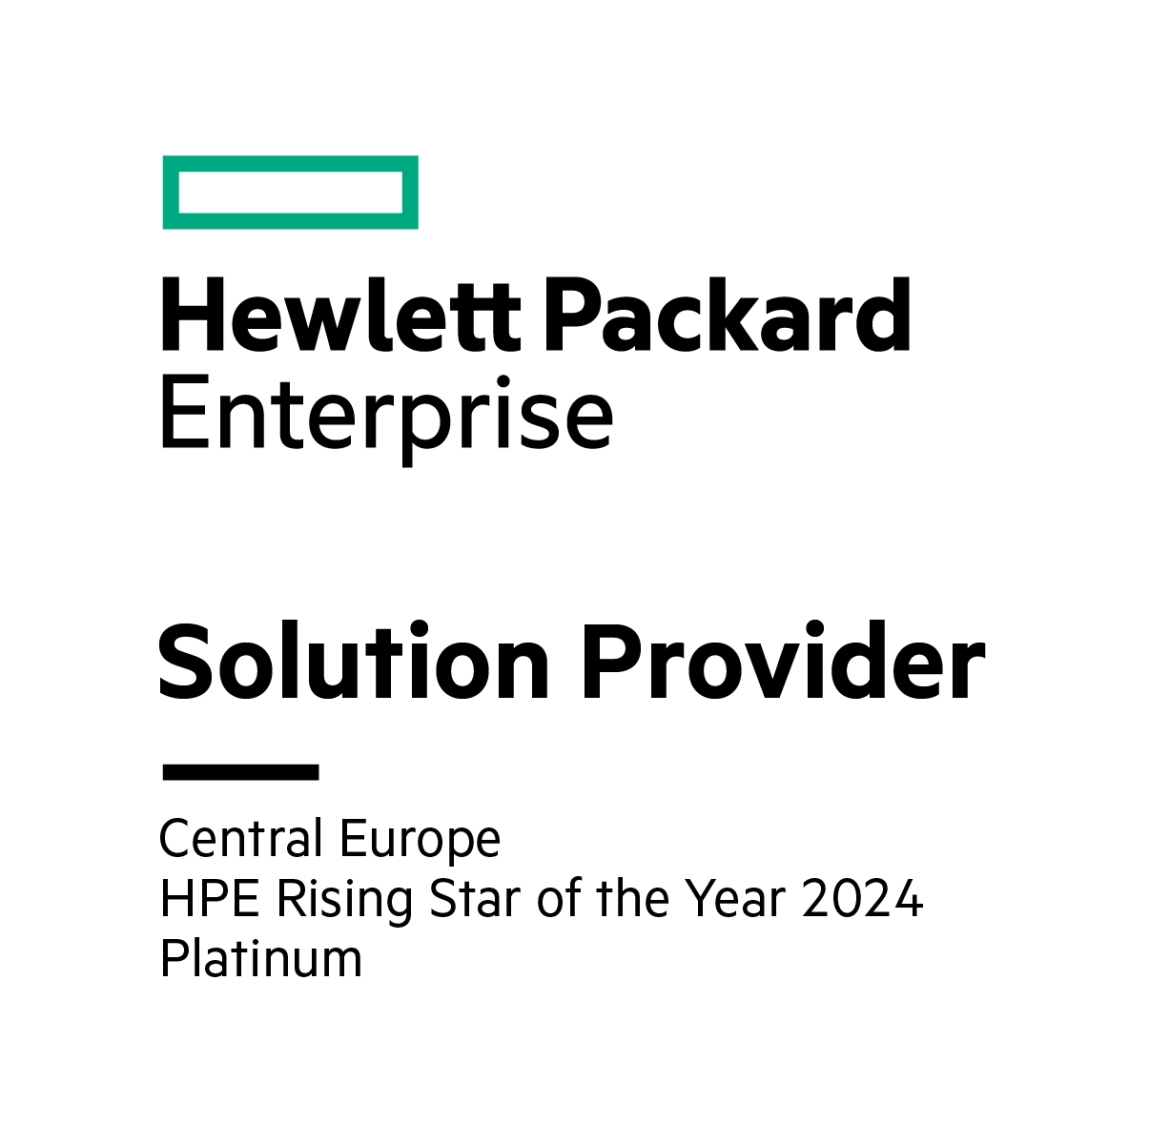 Hewlett Packard Enterprise Award